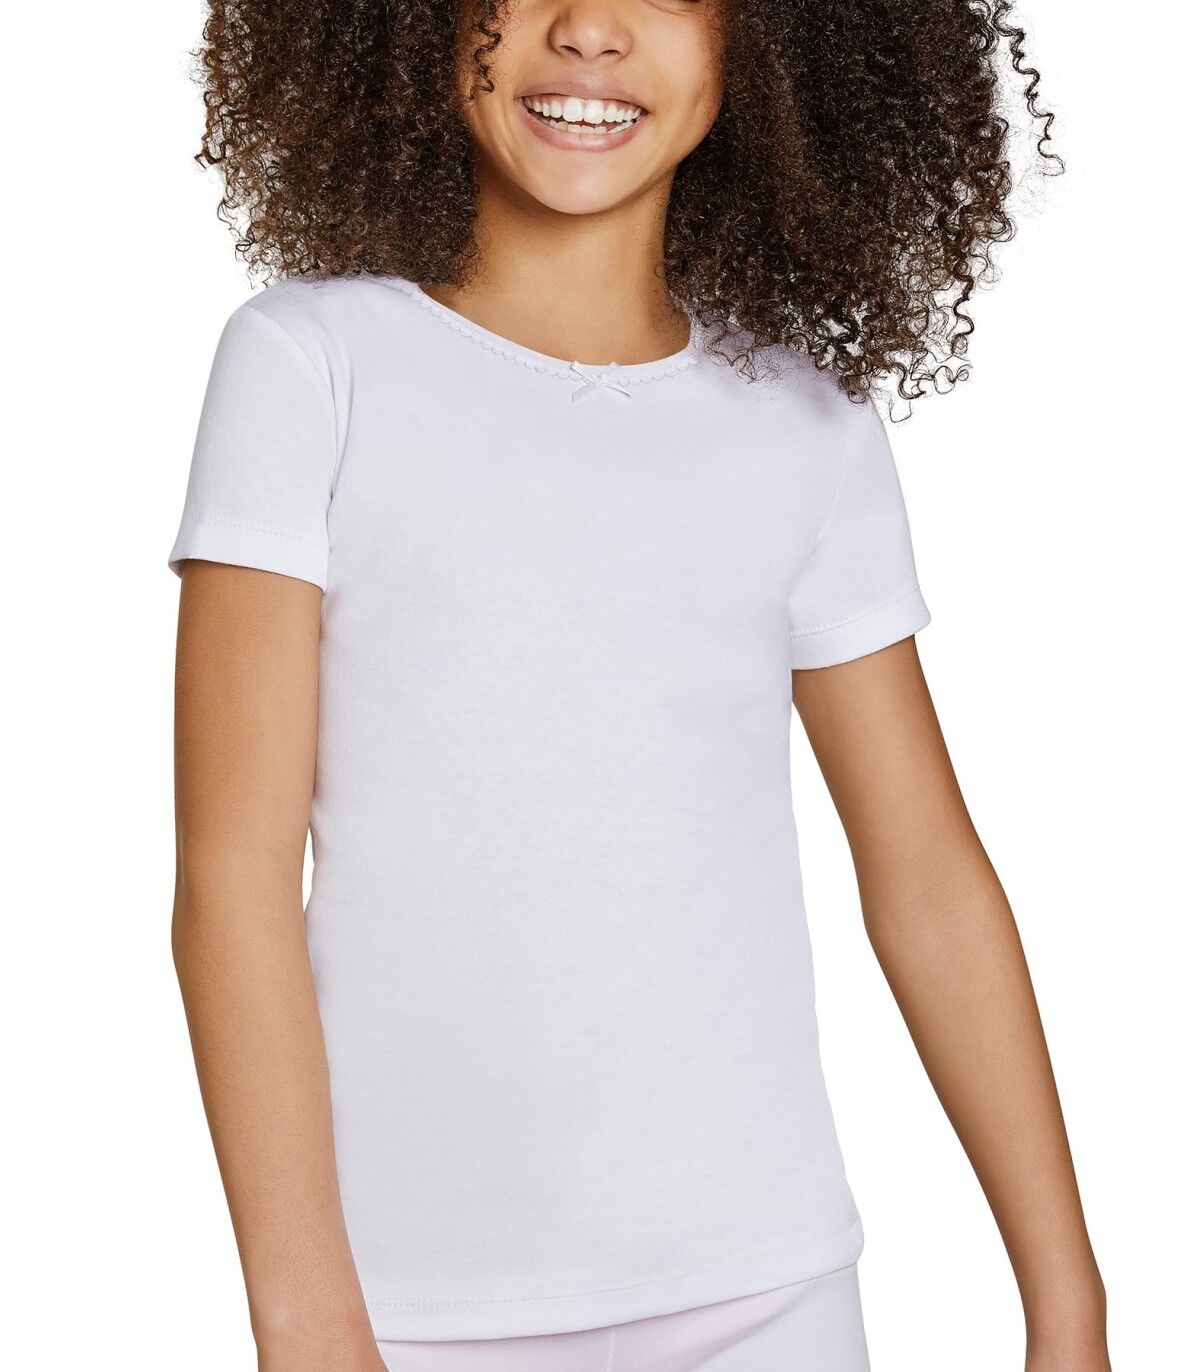 Camiseta infantil Manga corta Ysabel Mora 18307 4 Blanco